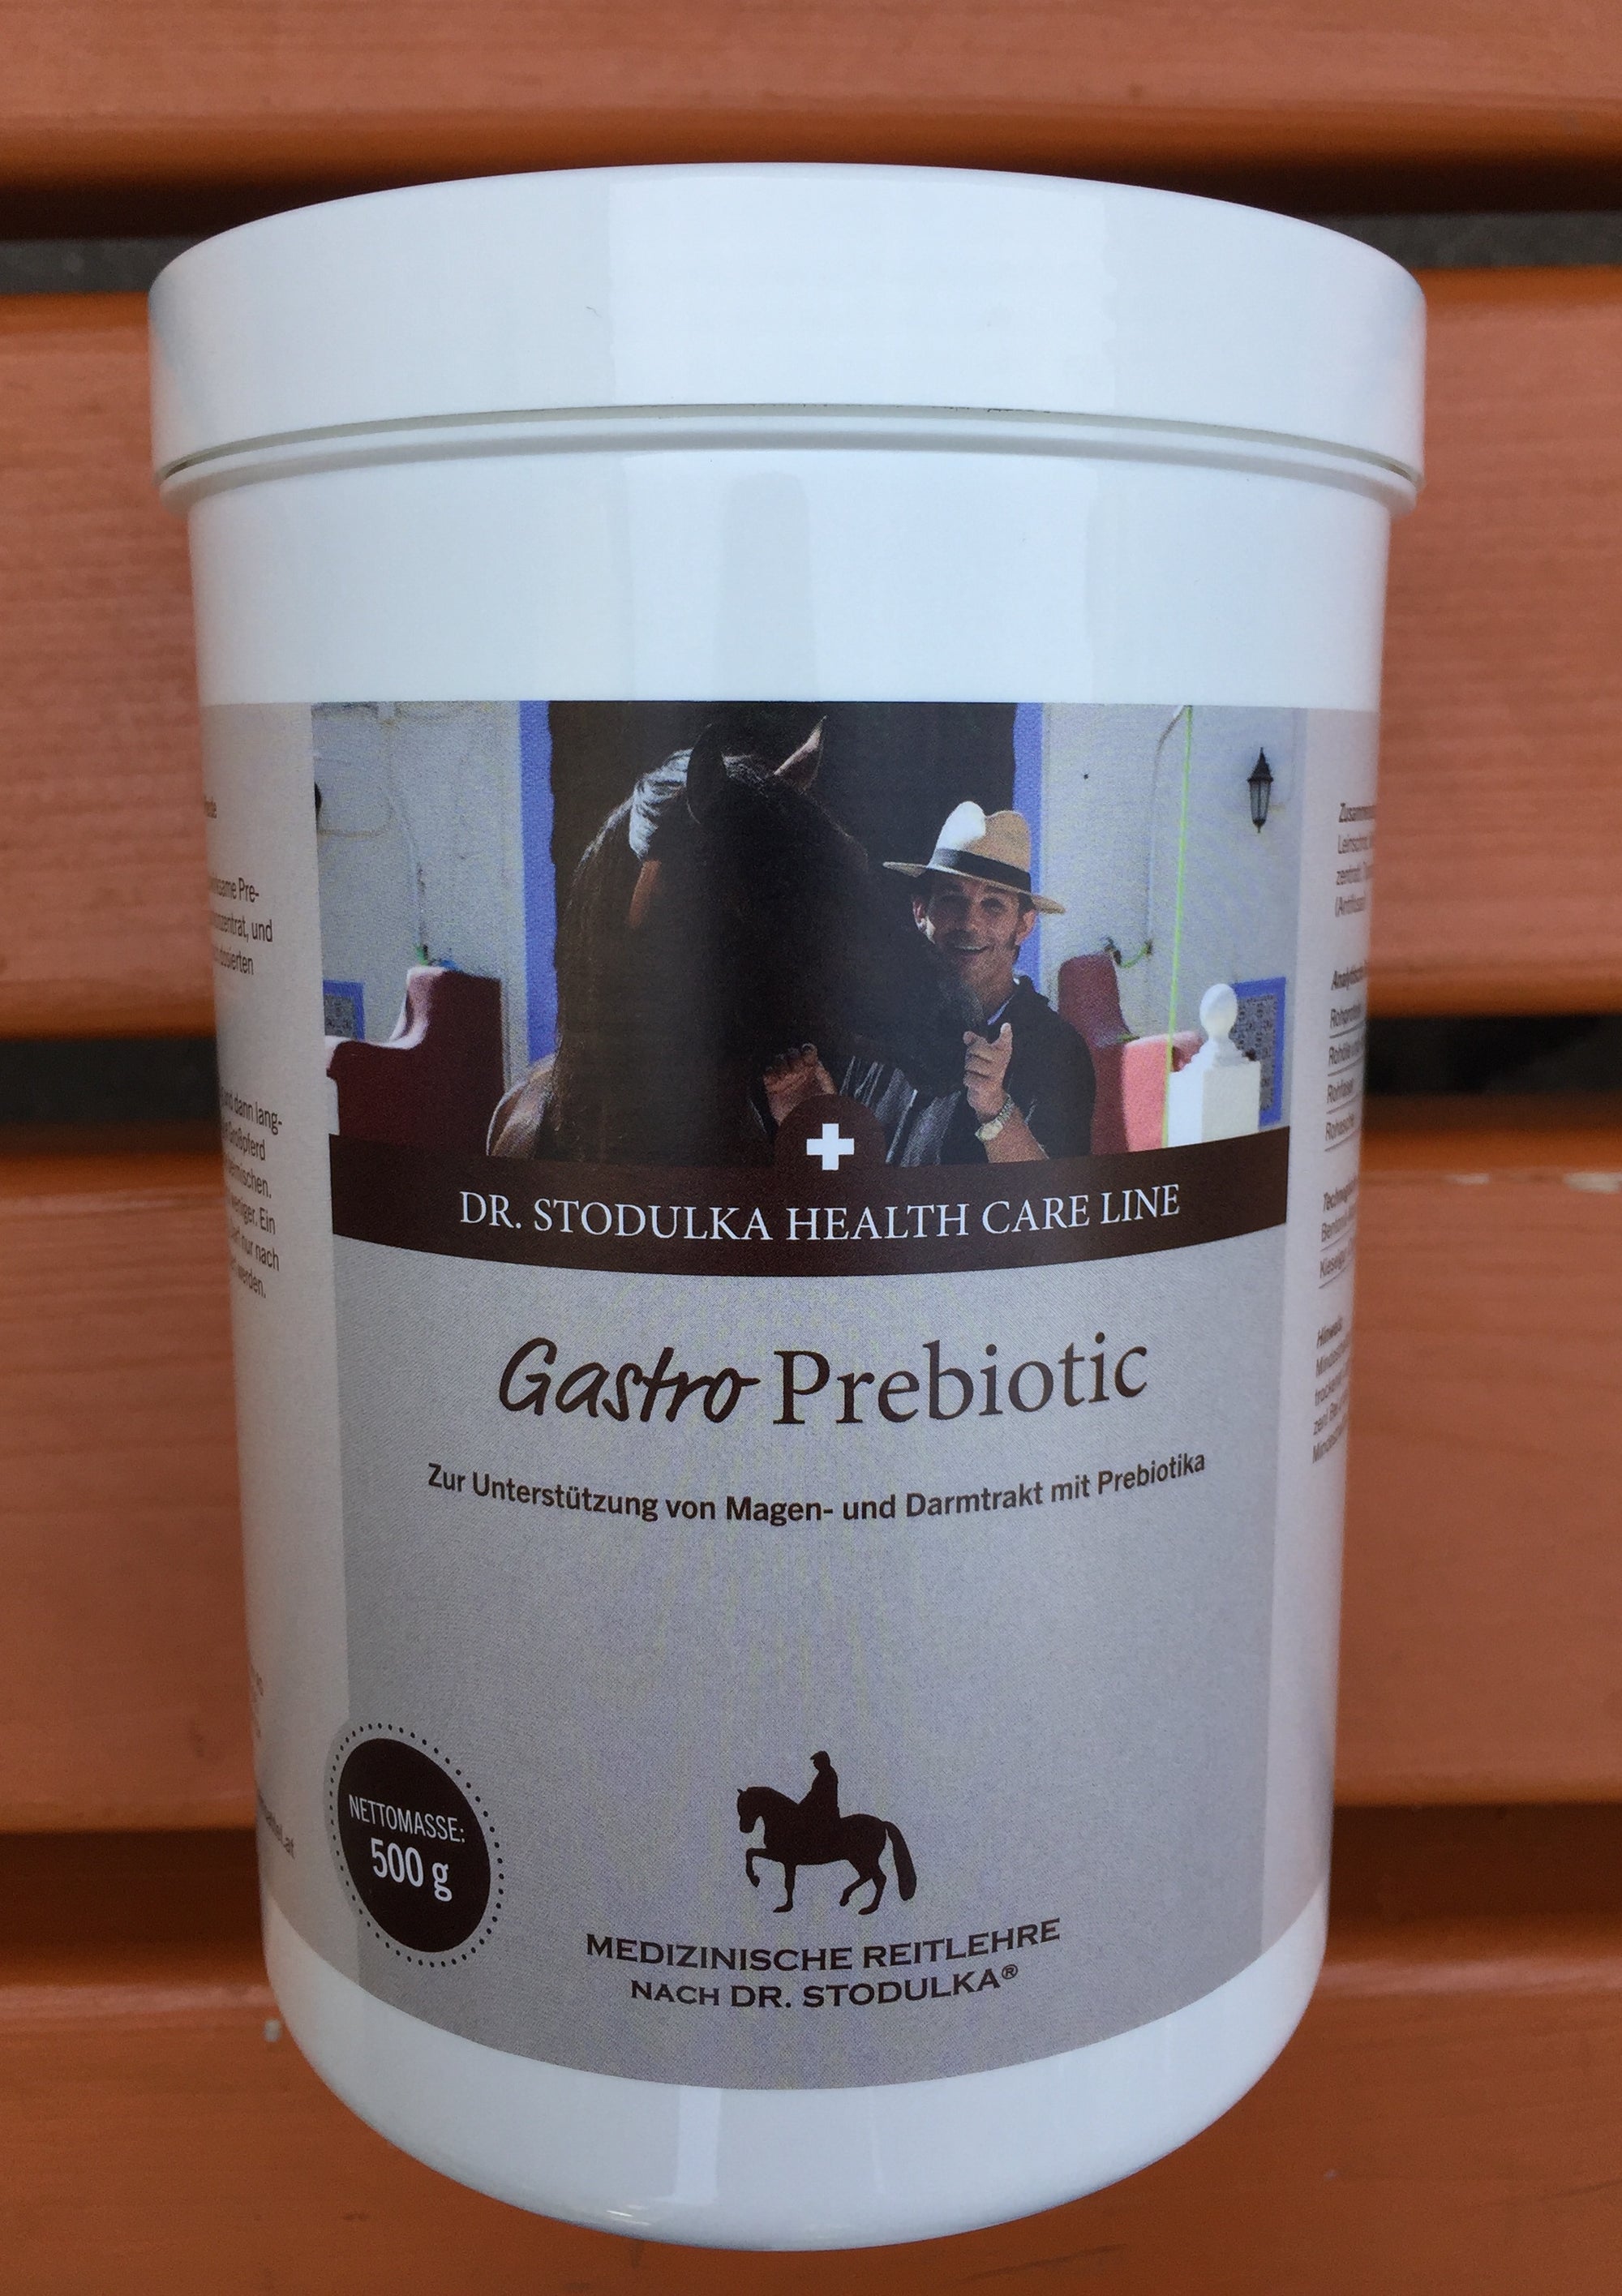 Gastro Prebiotic